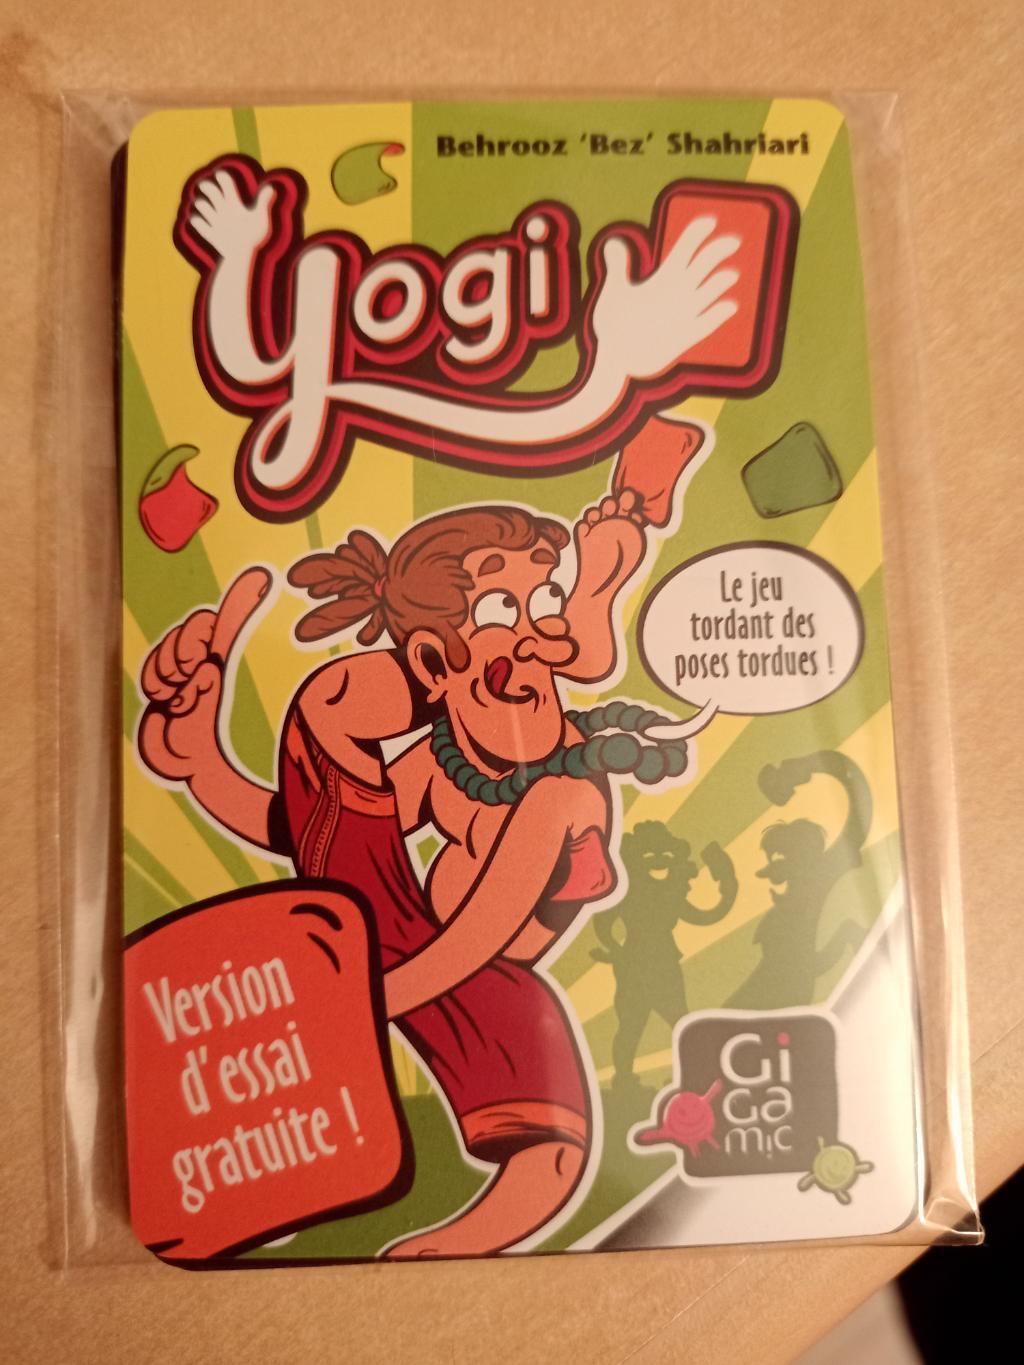 Yogi - Version D'essai Gratuite